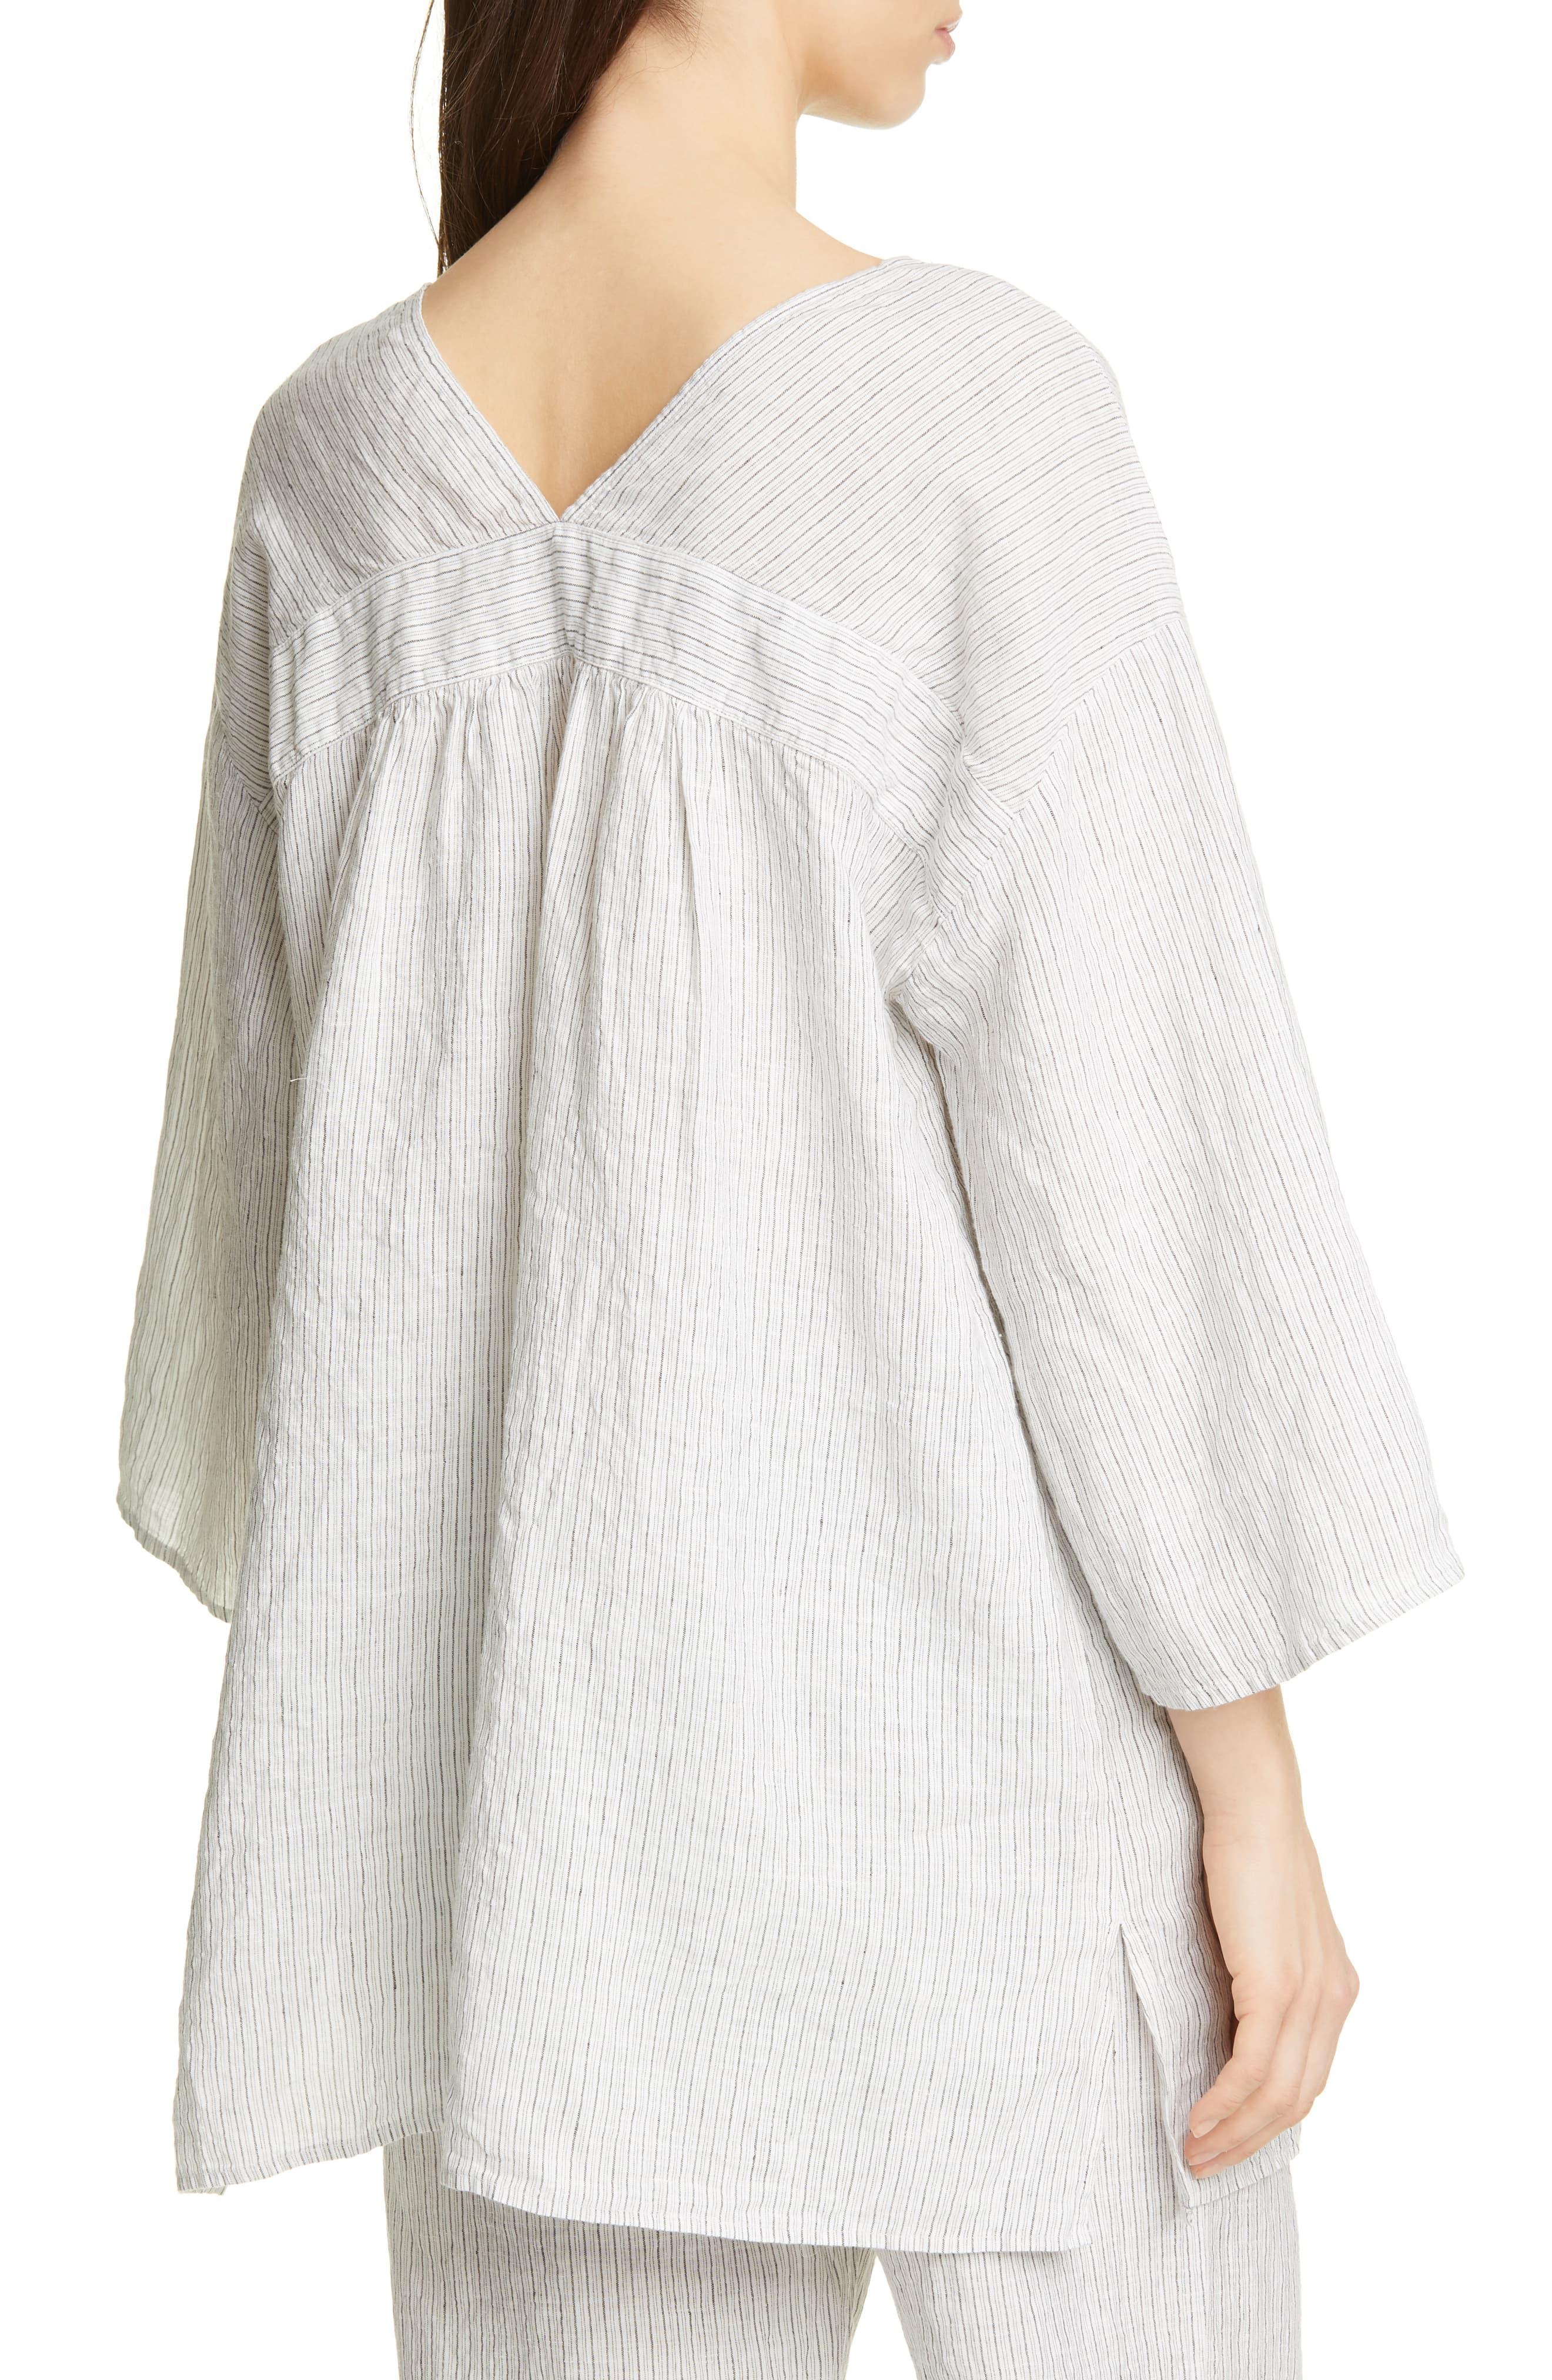 Eileen Fisher V-neck Organic Linen Tunic in White - Lyst